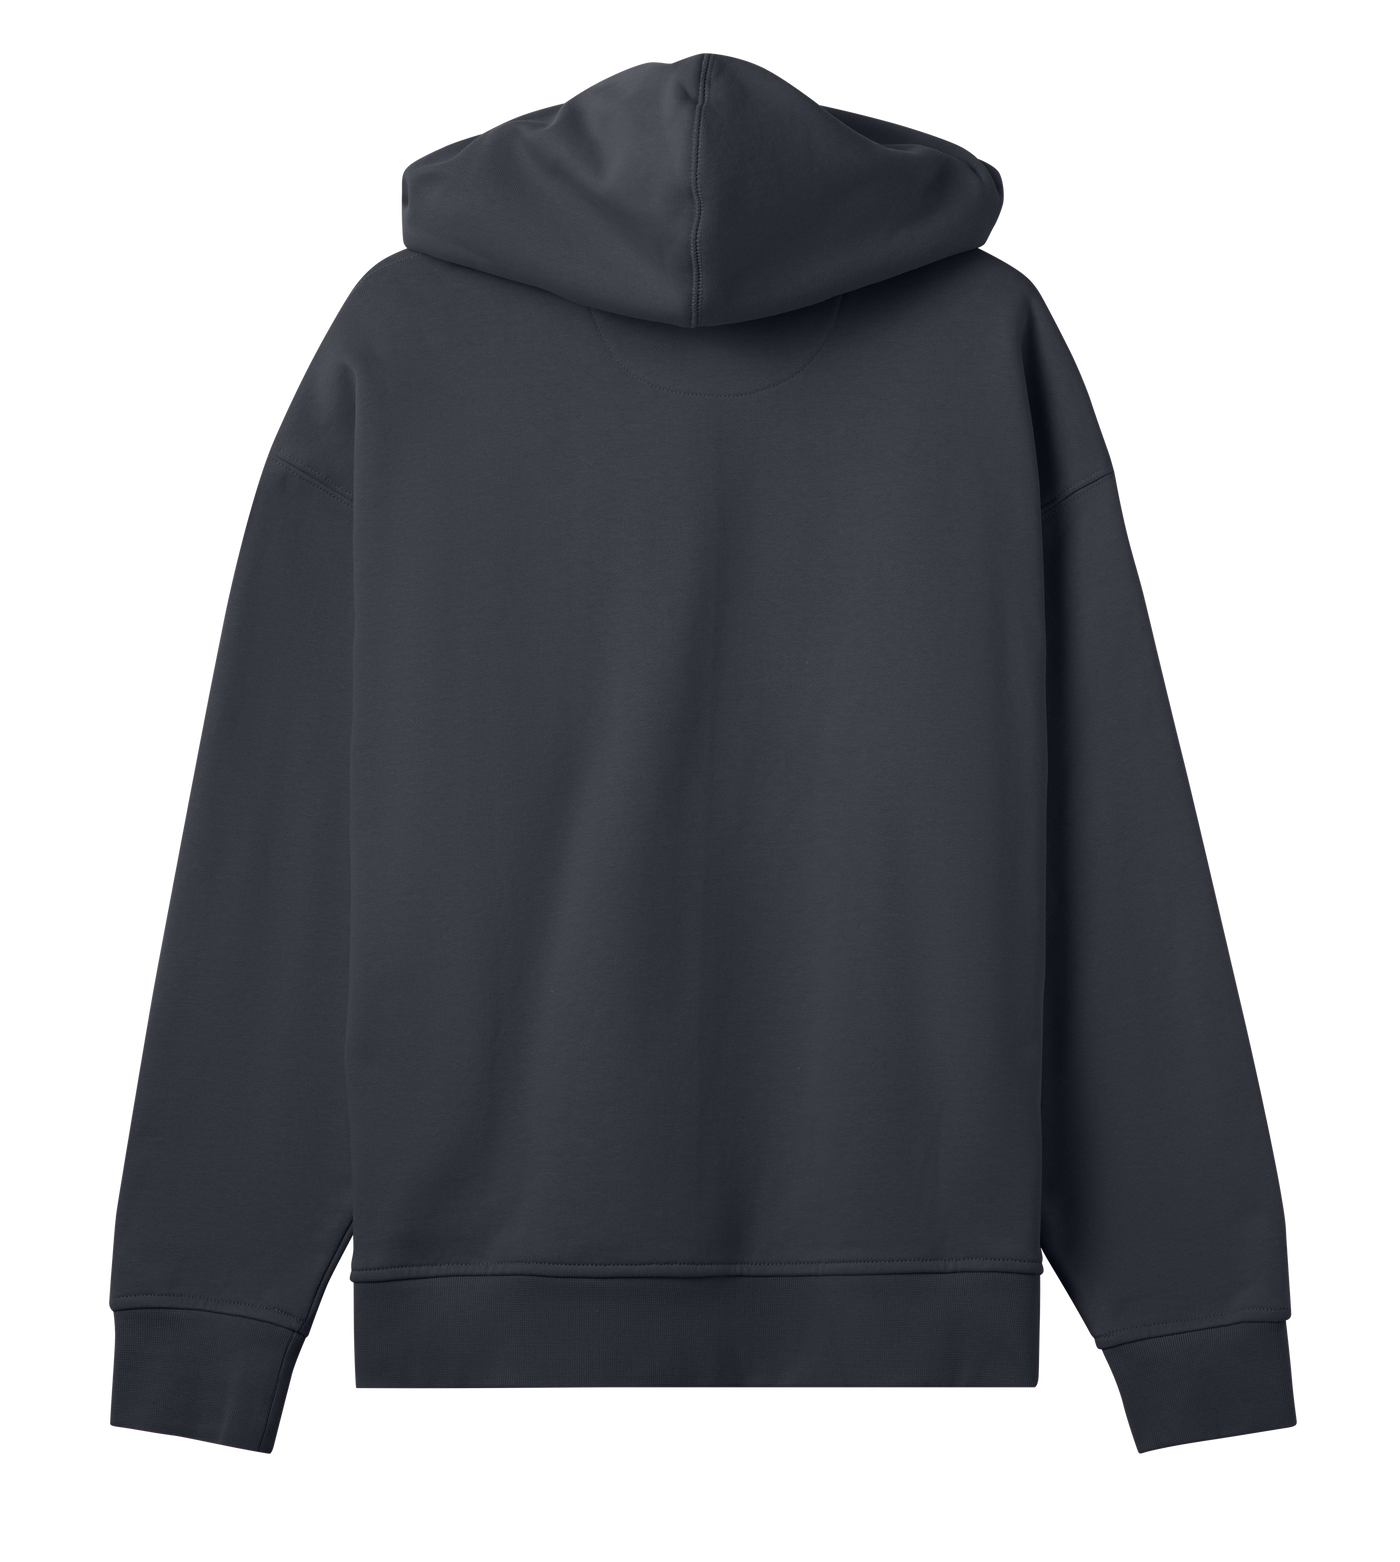 Reyrr Oversized Hoodie W - Premium hoodie from REYRR STUDIO - Shop now at Reyrr Athletics